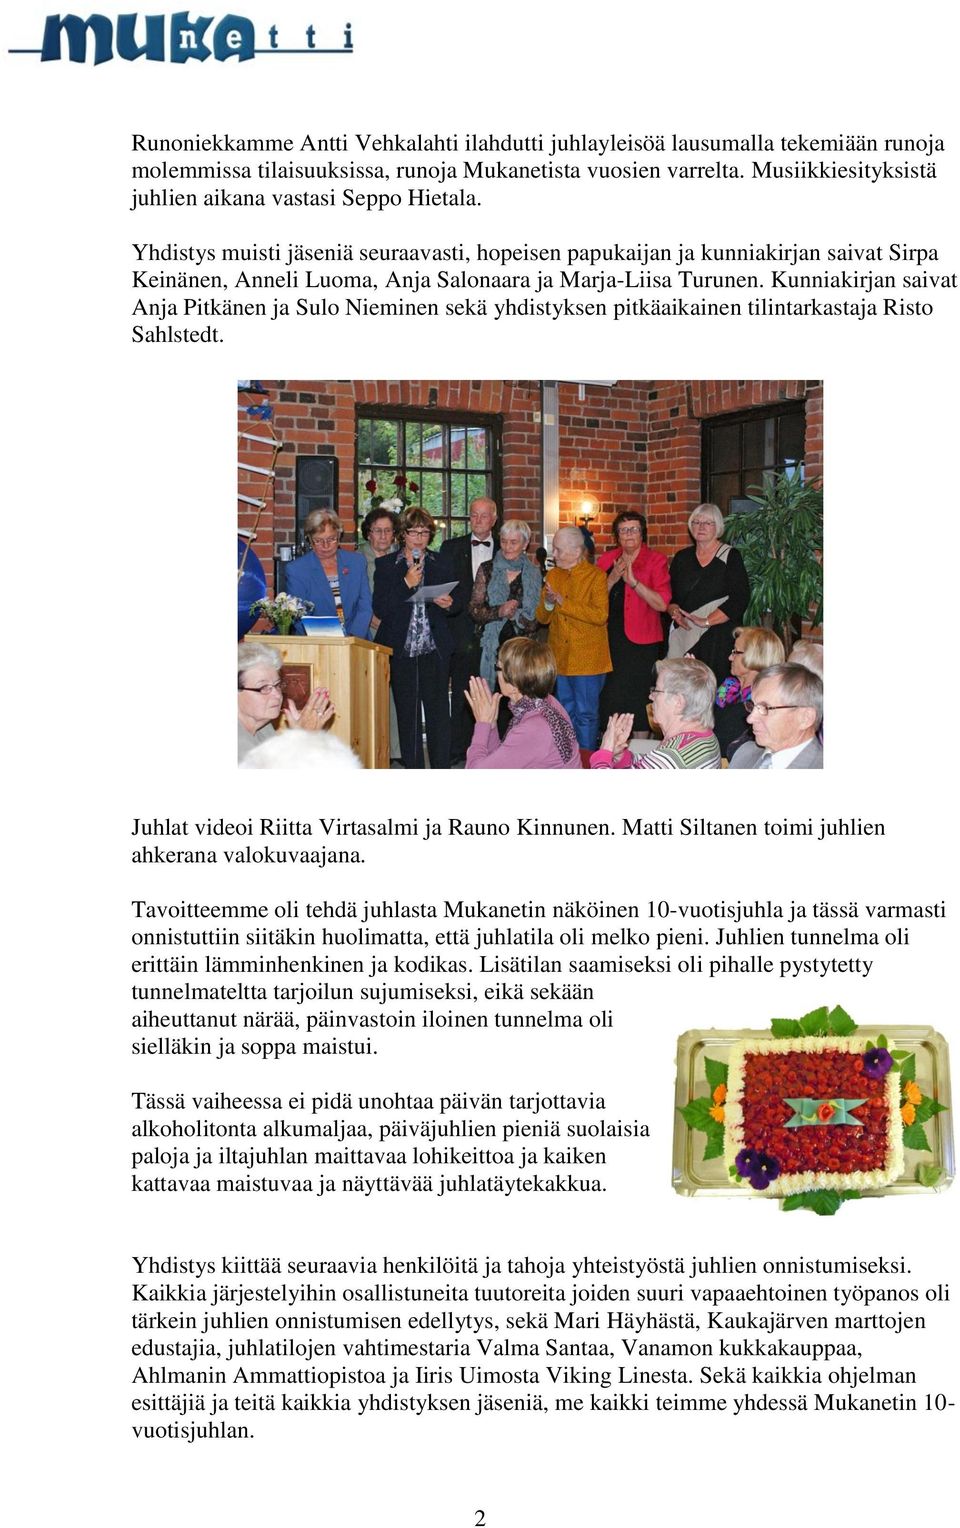 Yhdistys muisti jäseniä seuraavasti, hopeisen papukaijan ja kunniakirjan saivat Sirpa Keinänen, Anneli Luoma, Anja Salonaara ja Marja-Liisa Turunen.